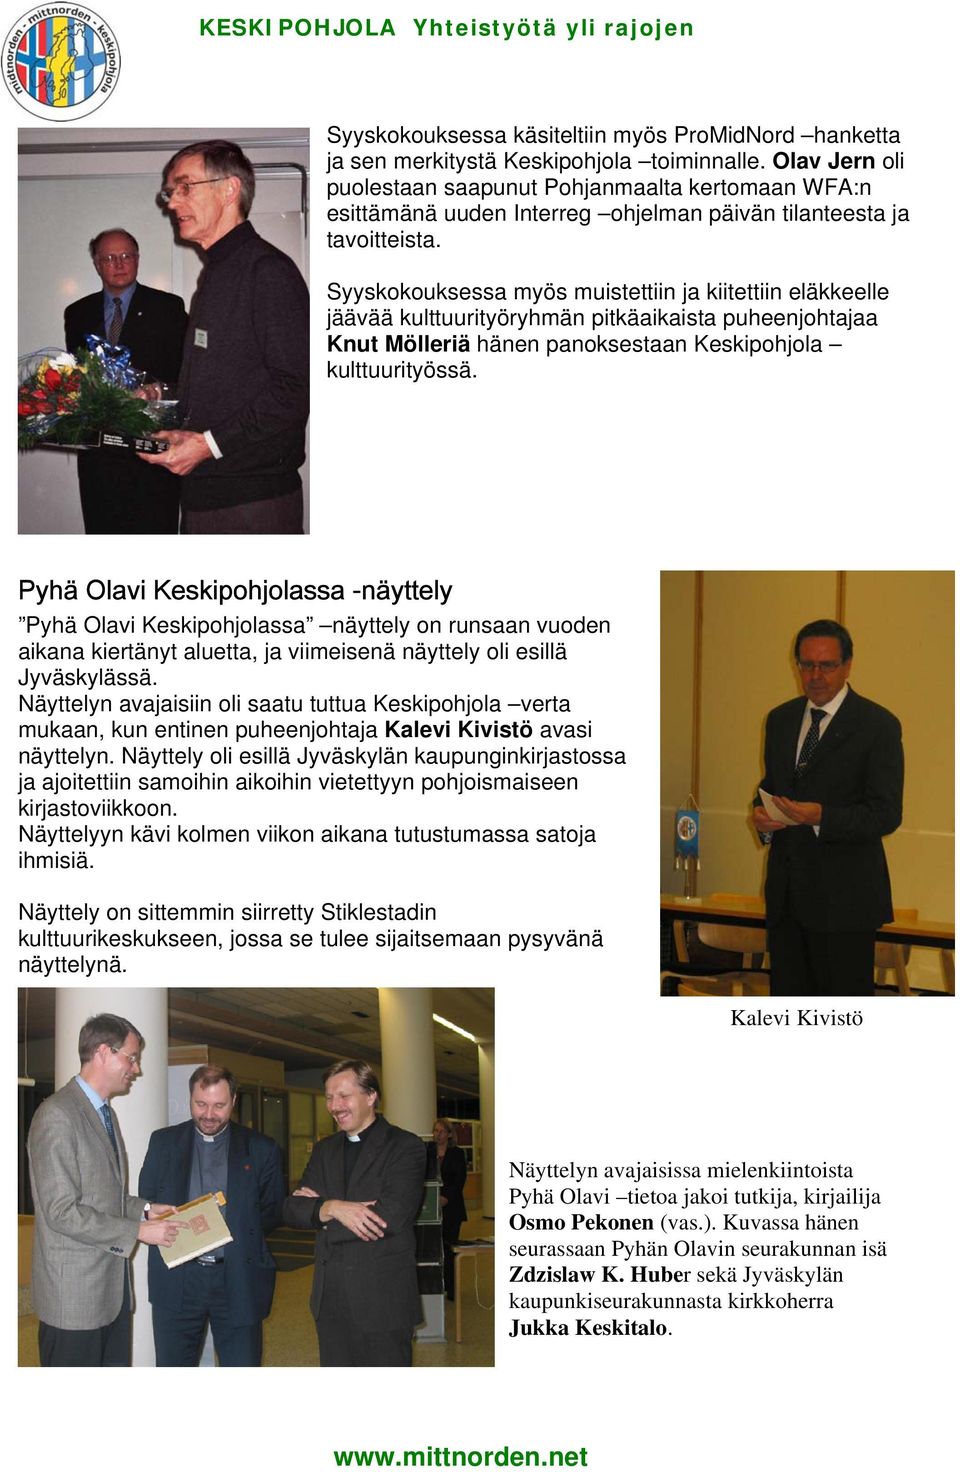 Syyskokouksessa myös muistettiin ja kiitettiin eläkkeelle jäävää kulttuurityöryhmän pitkäaikaista puheenjohtajaa Knut Mölleriä hänen panoksestaan Keskipohjola kulttuurityössä.